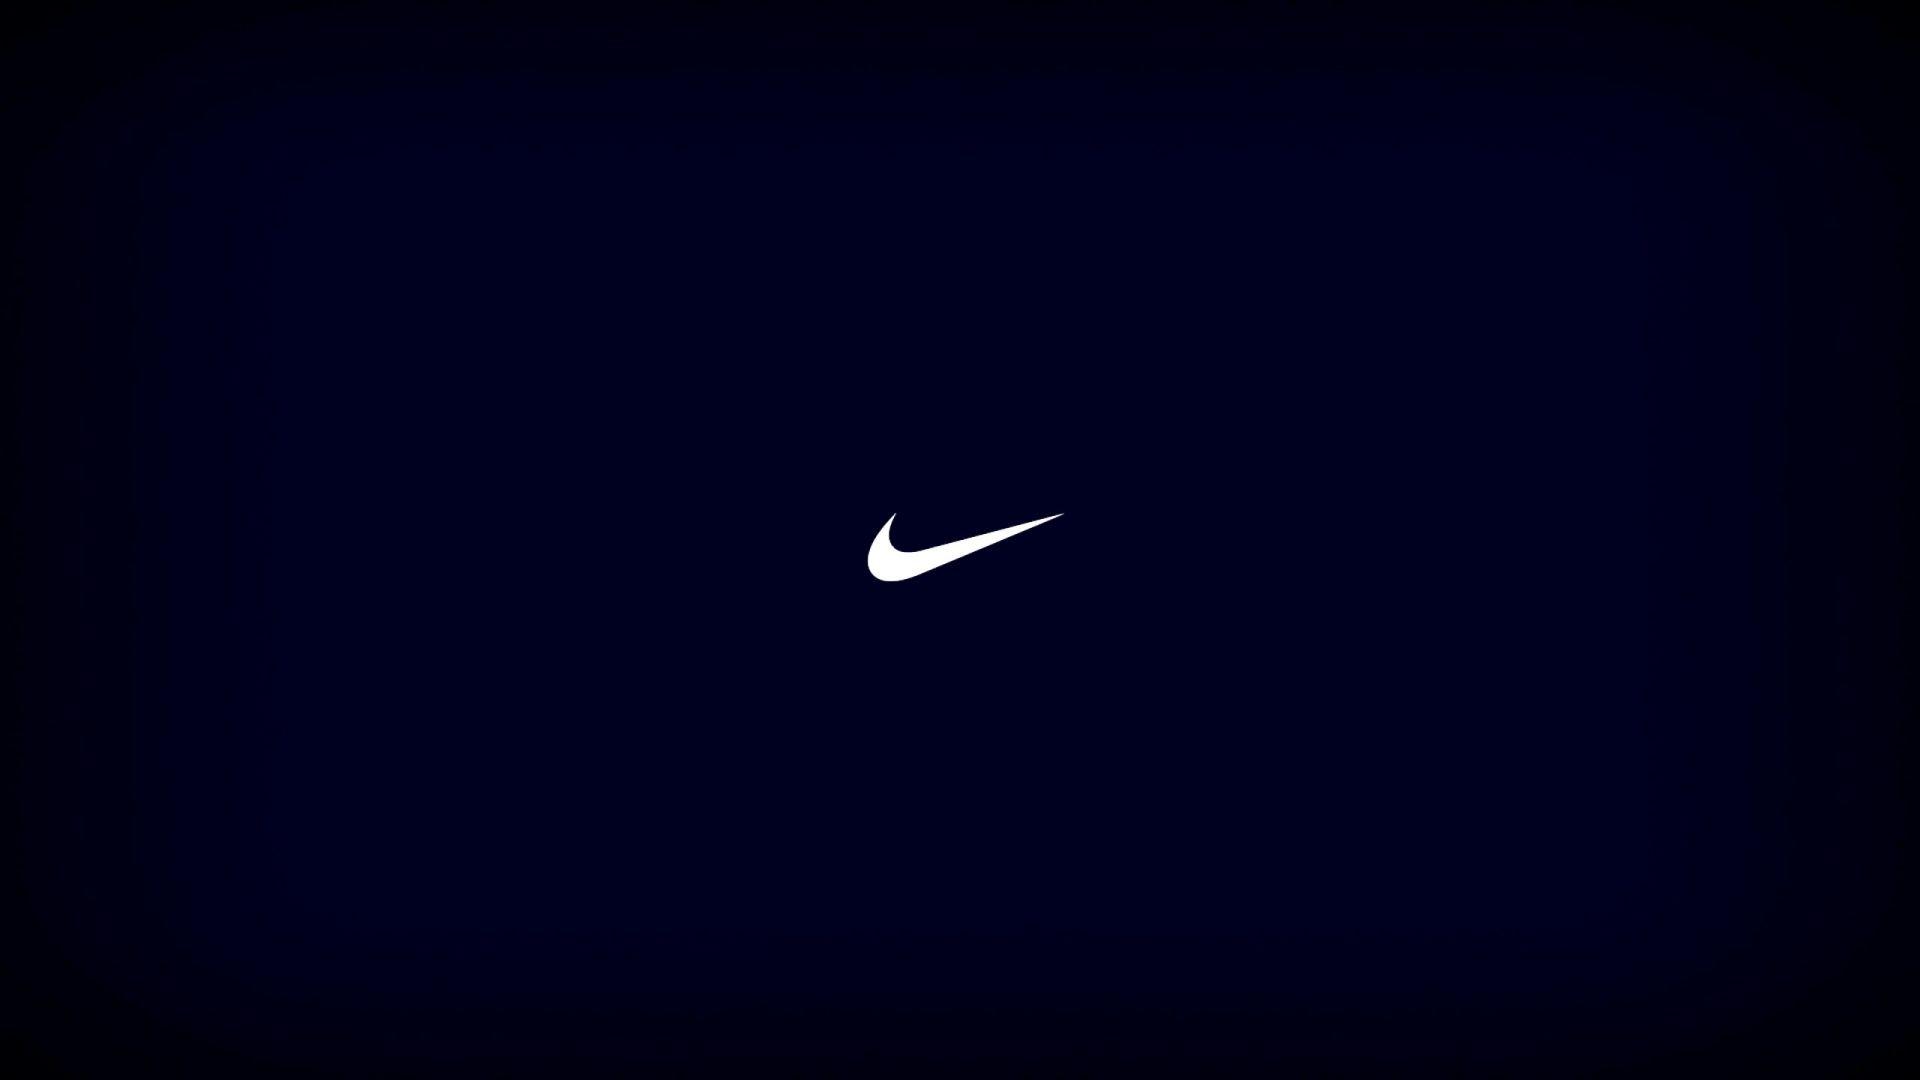 Blue and White Nike Logo - Nike Logo Background